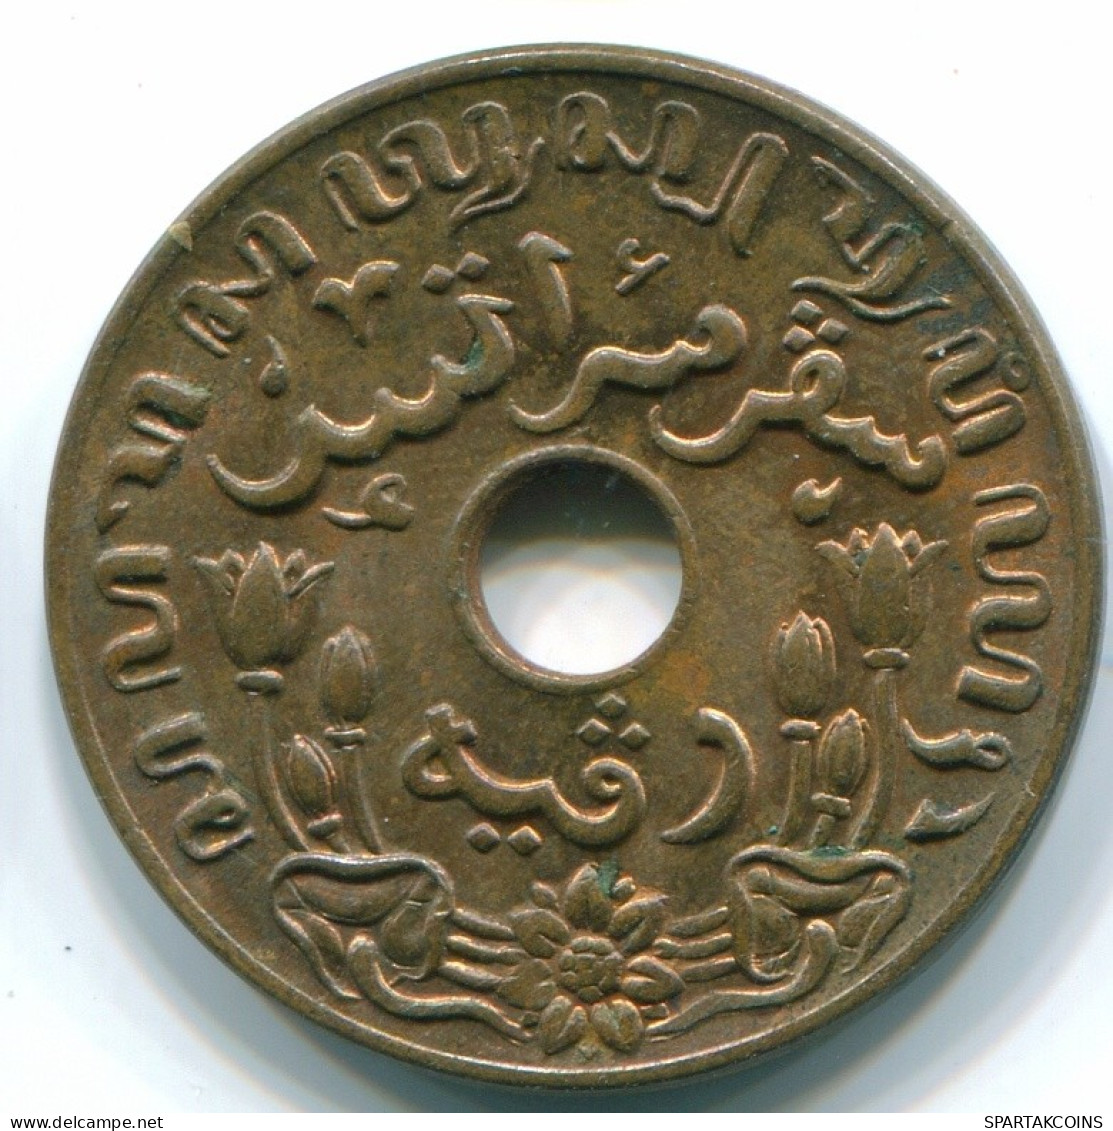 1 CENT 1942 INDES ORIENTALES NÉERLANDAISES INDONÉSIE Bronze Colonial Pièce #S10306.F.A - Indes Néerlandaises